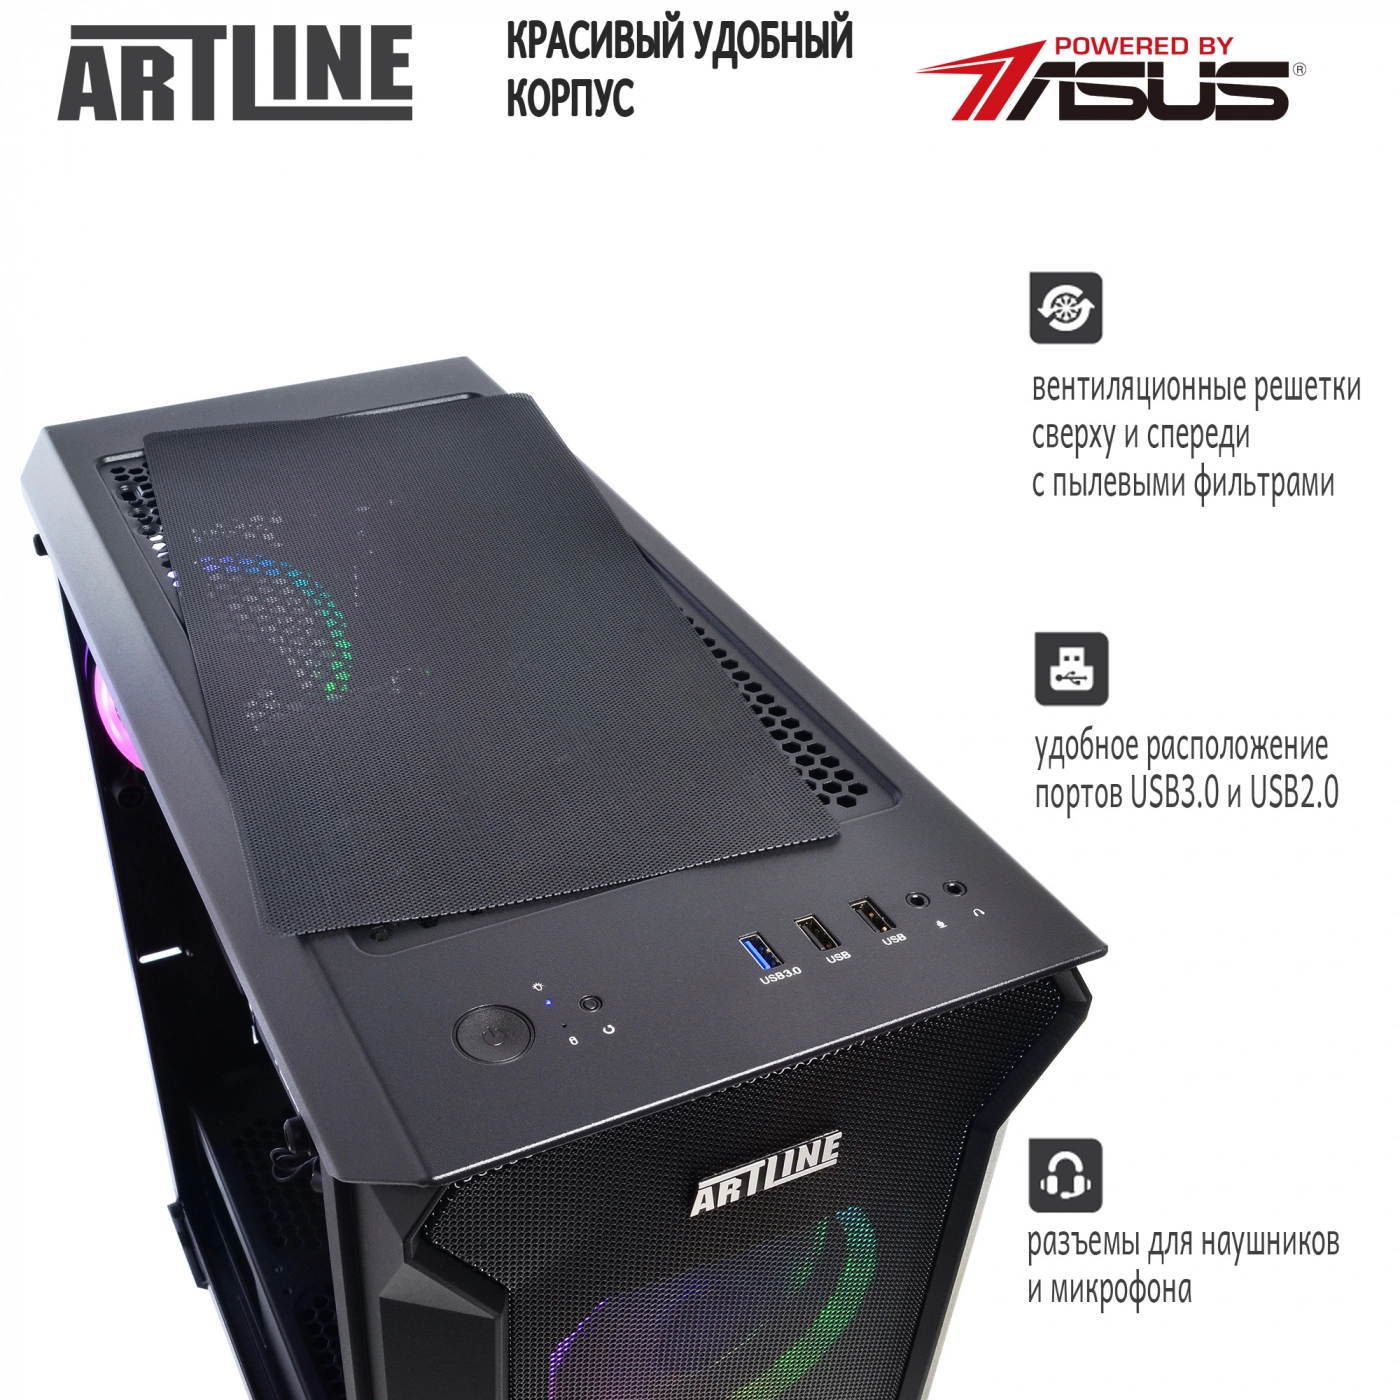 Купить Компьютер ARTLINE Gaming X66v09 - фото 5